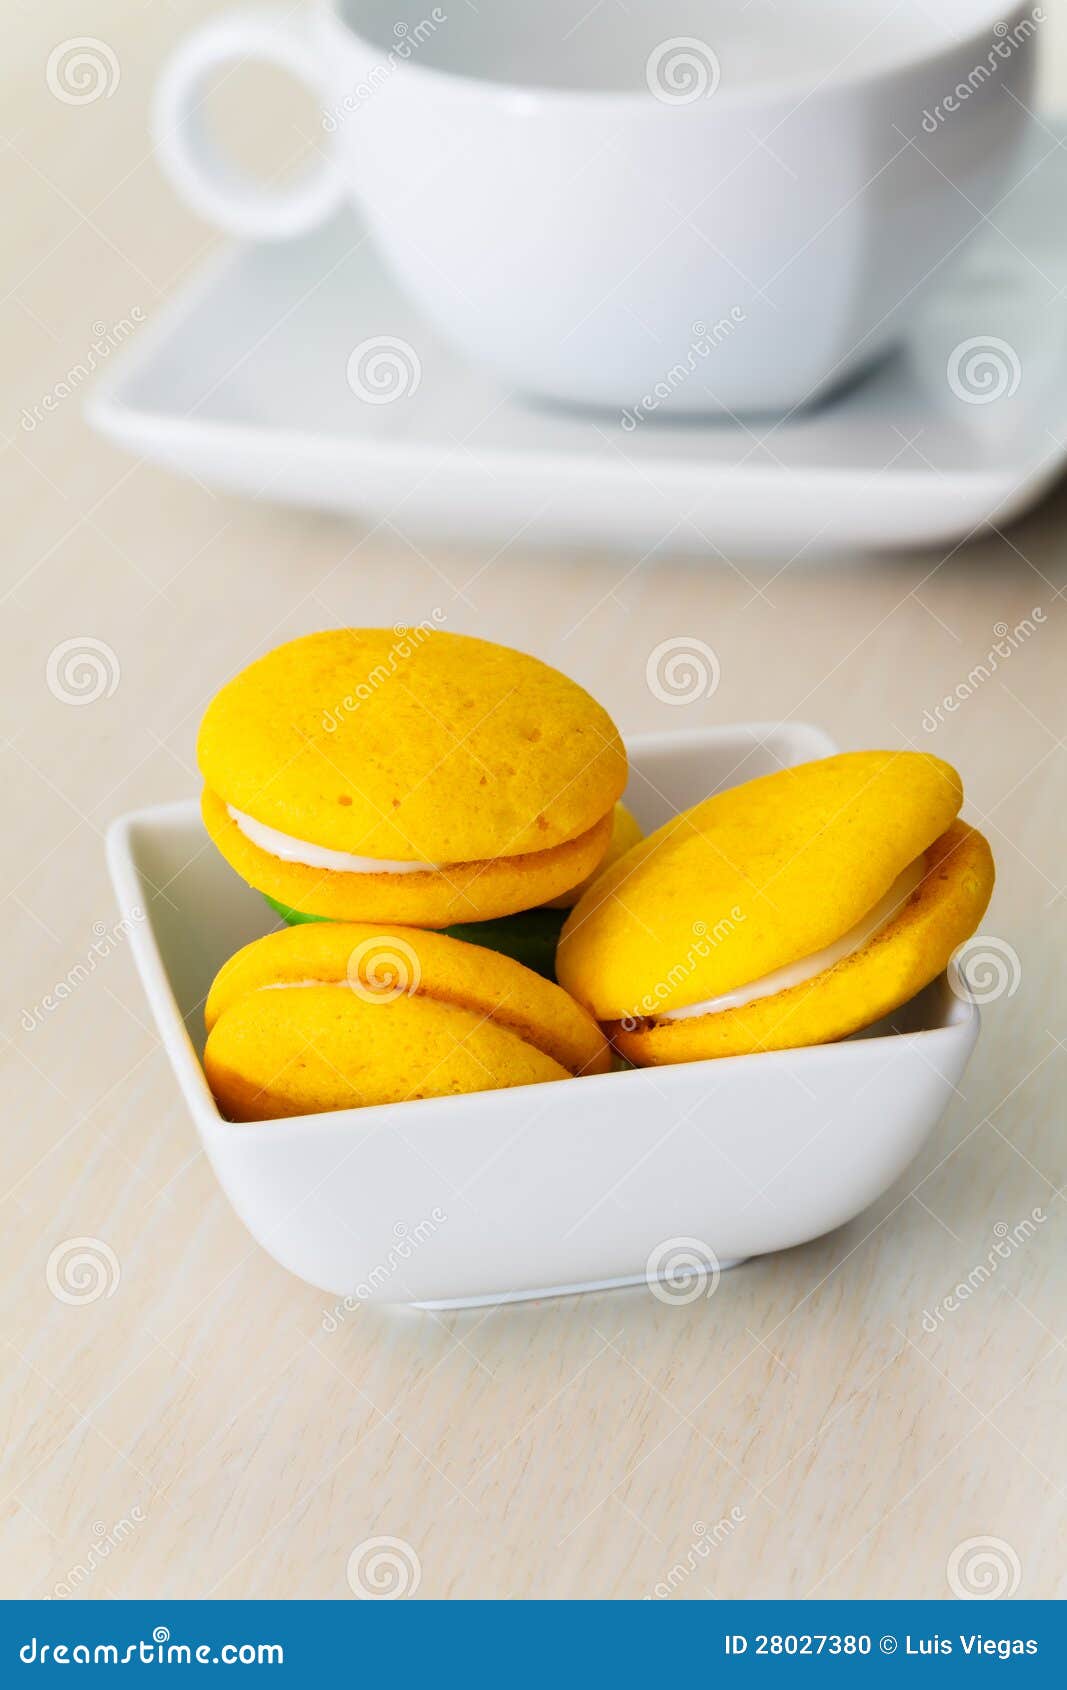 round yellow marron cookies